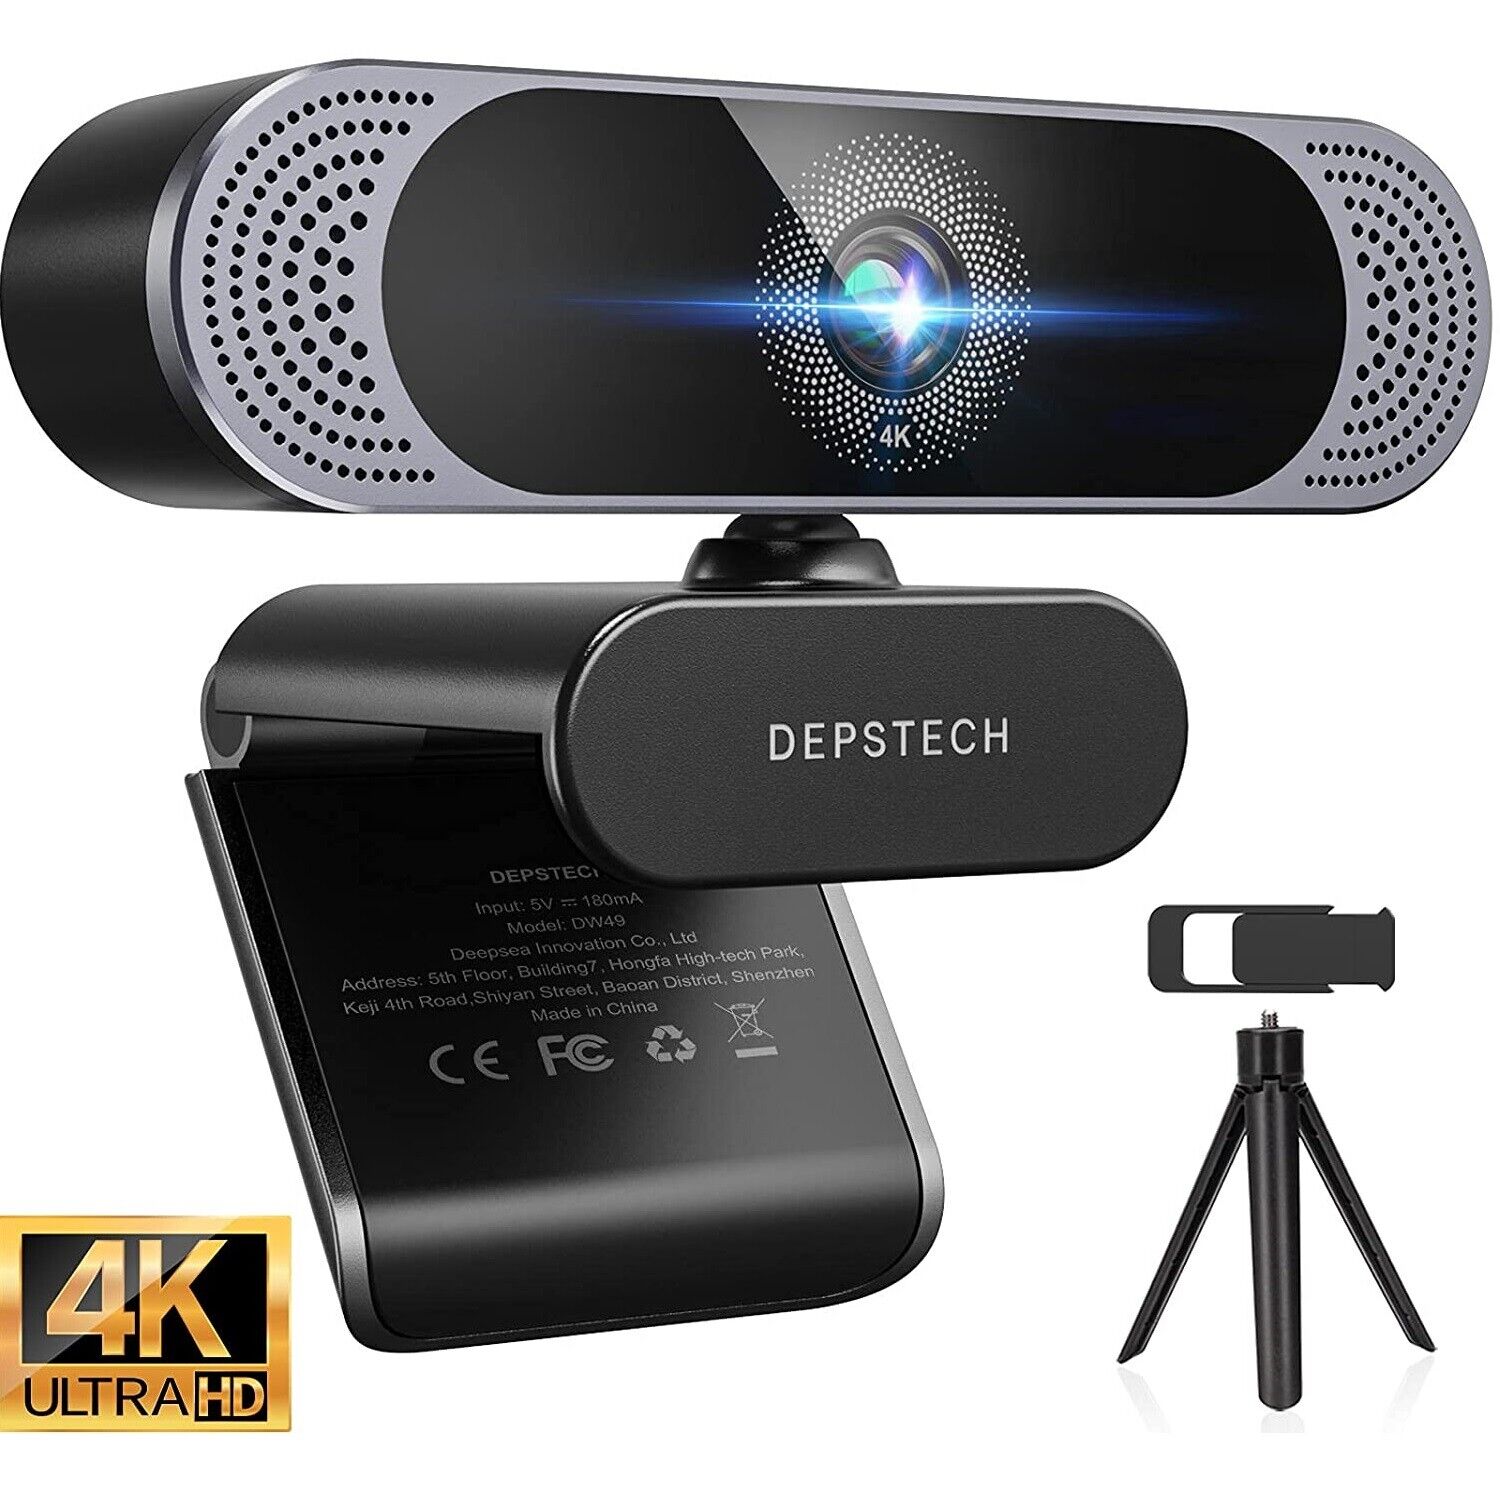  DEPSTECH 4K FHD Webcam Sony Sensor Autofocus USB Computer Streaming Web Camera